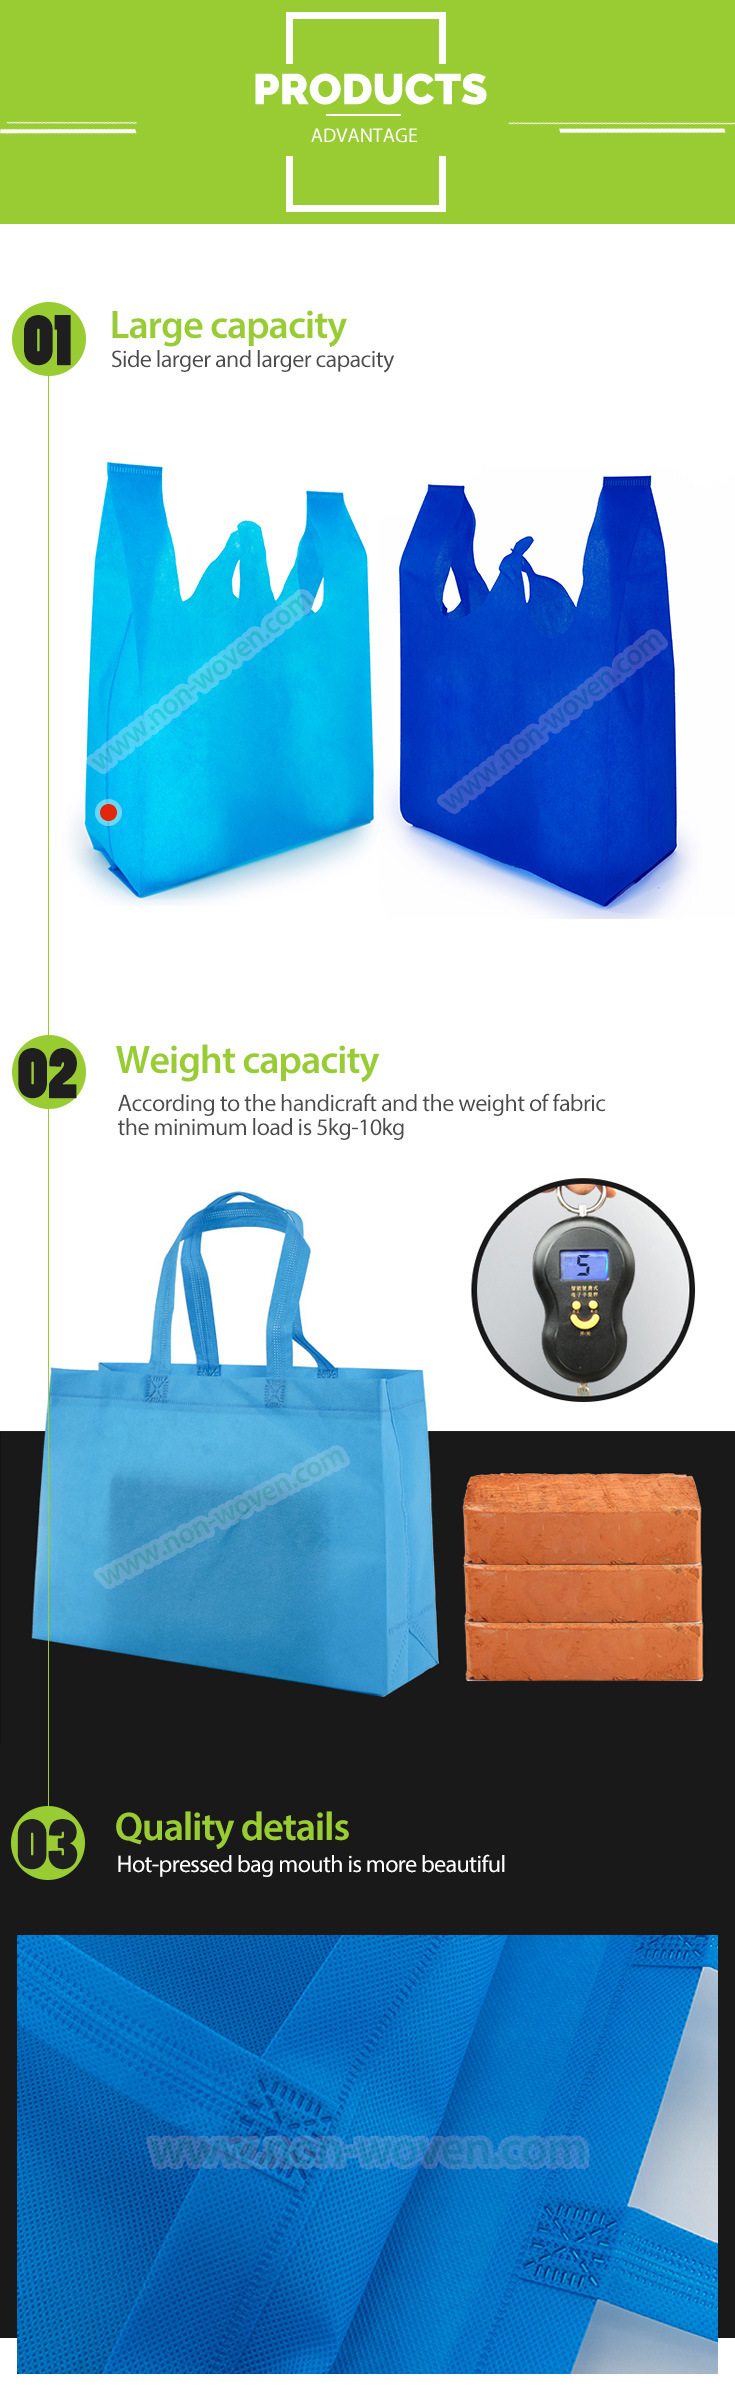 Shopping Bag, Non Woven Bag, Tote Bag, Biodegradable Bag,  Souvenir Bags, Promotional Bag, Eco Bag, Drawstring Bag, PP Bag,Recycle Bag, Reusable Bag,Grocery Bag